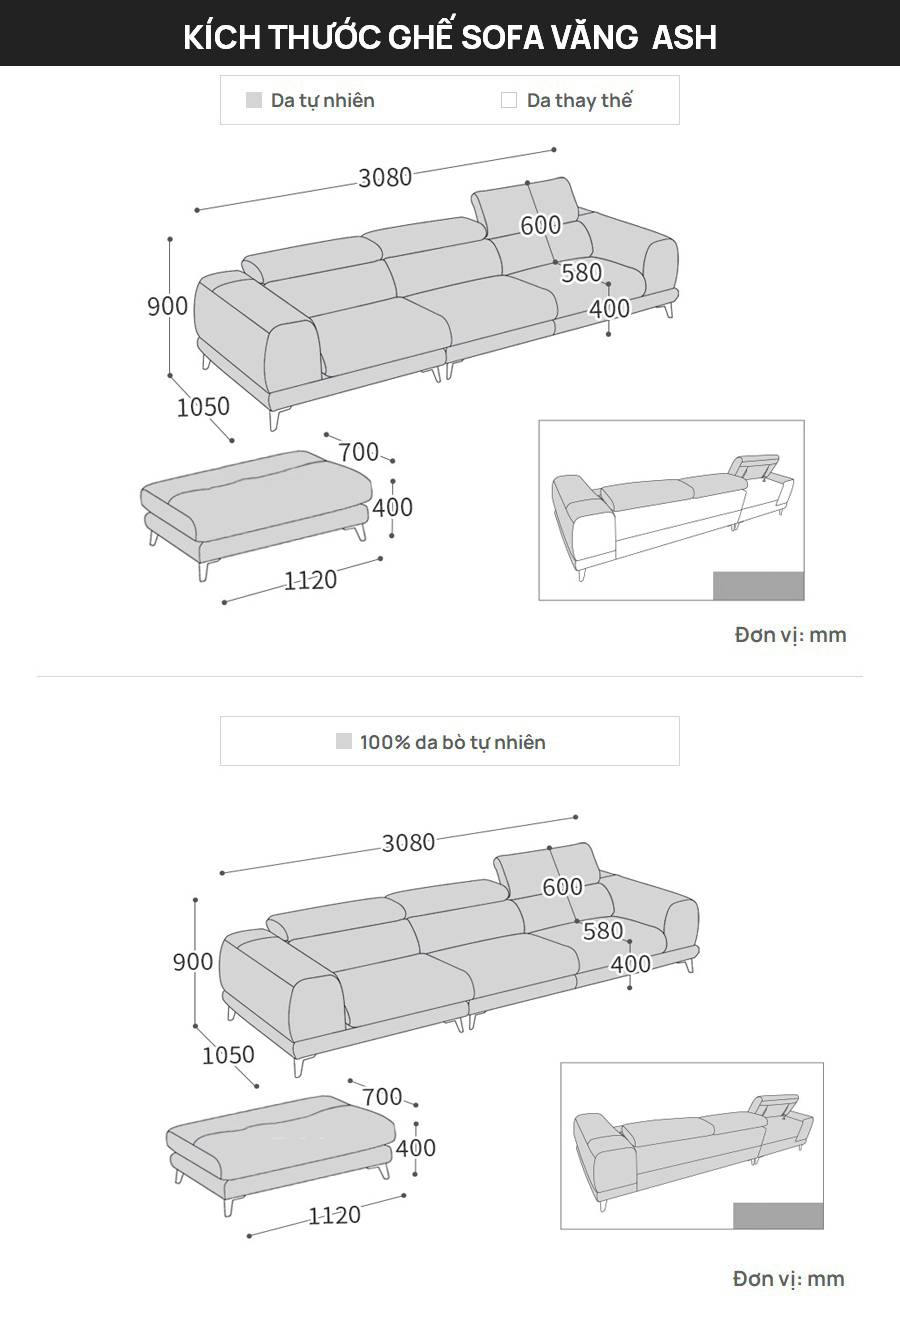 Kích thước cụ thể của bộ sofa văng Ash